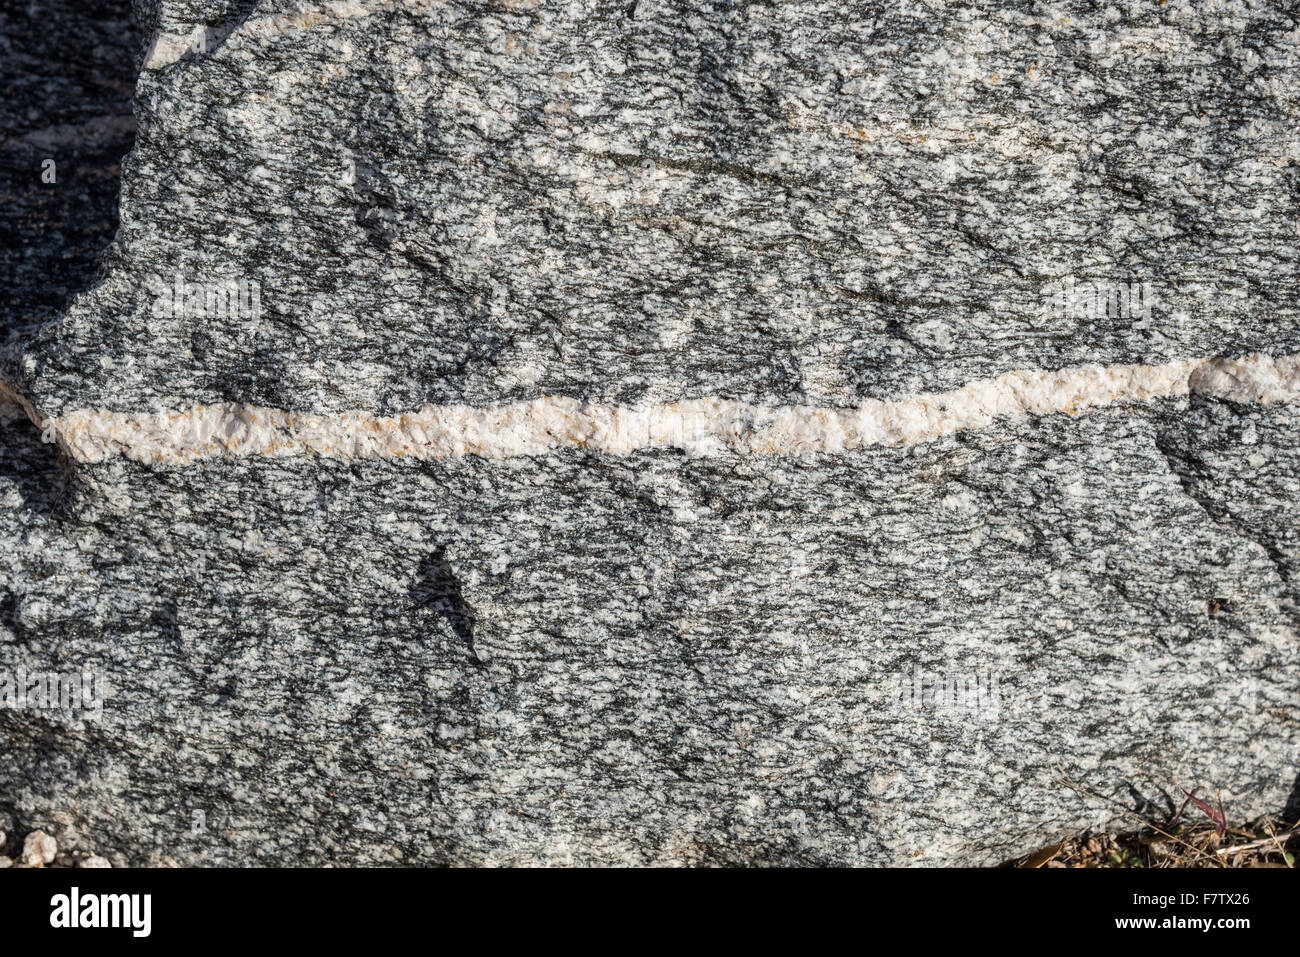 Präkambrischen Migmatite besteht aus Mineralien Quarz, Feldspat und Biotit am Mount Lemmon, Tucson, Arizona, USA. Stockfoto